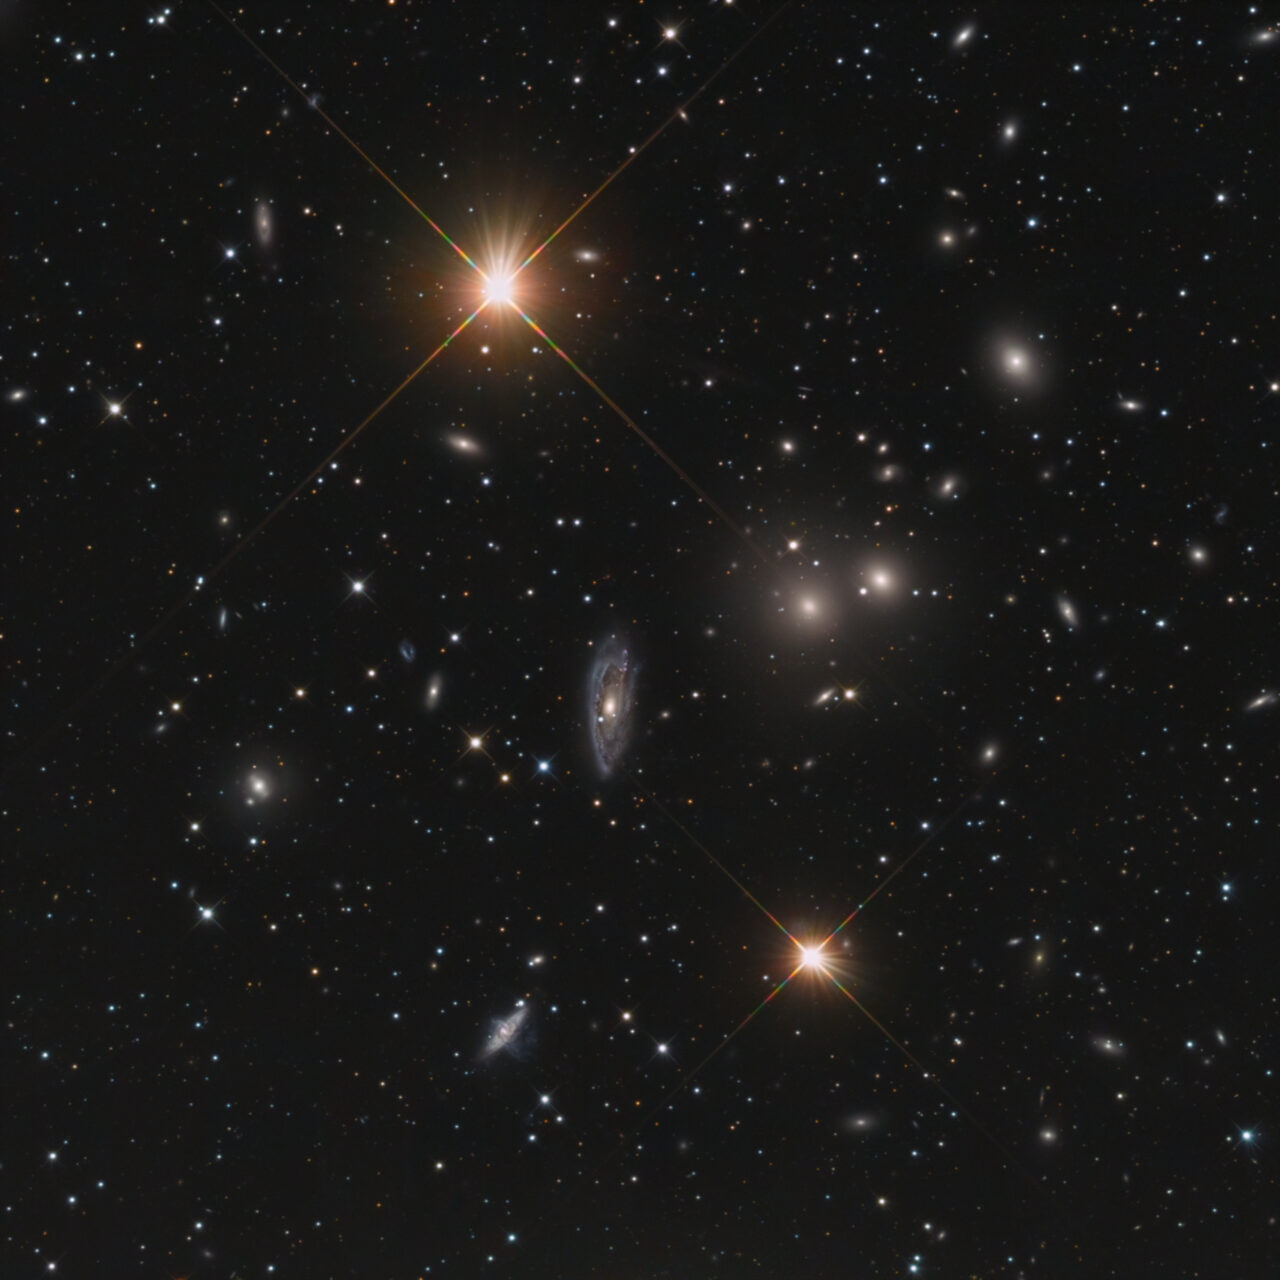 NGC 3312